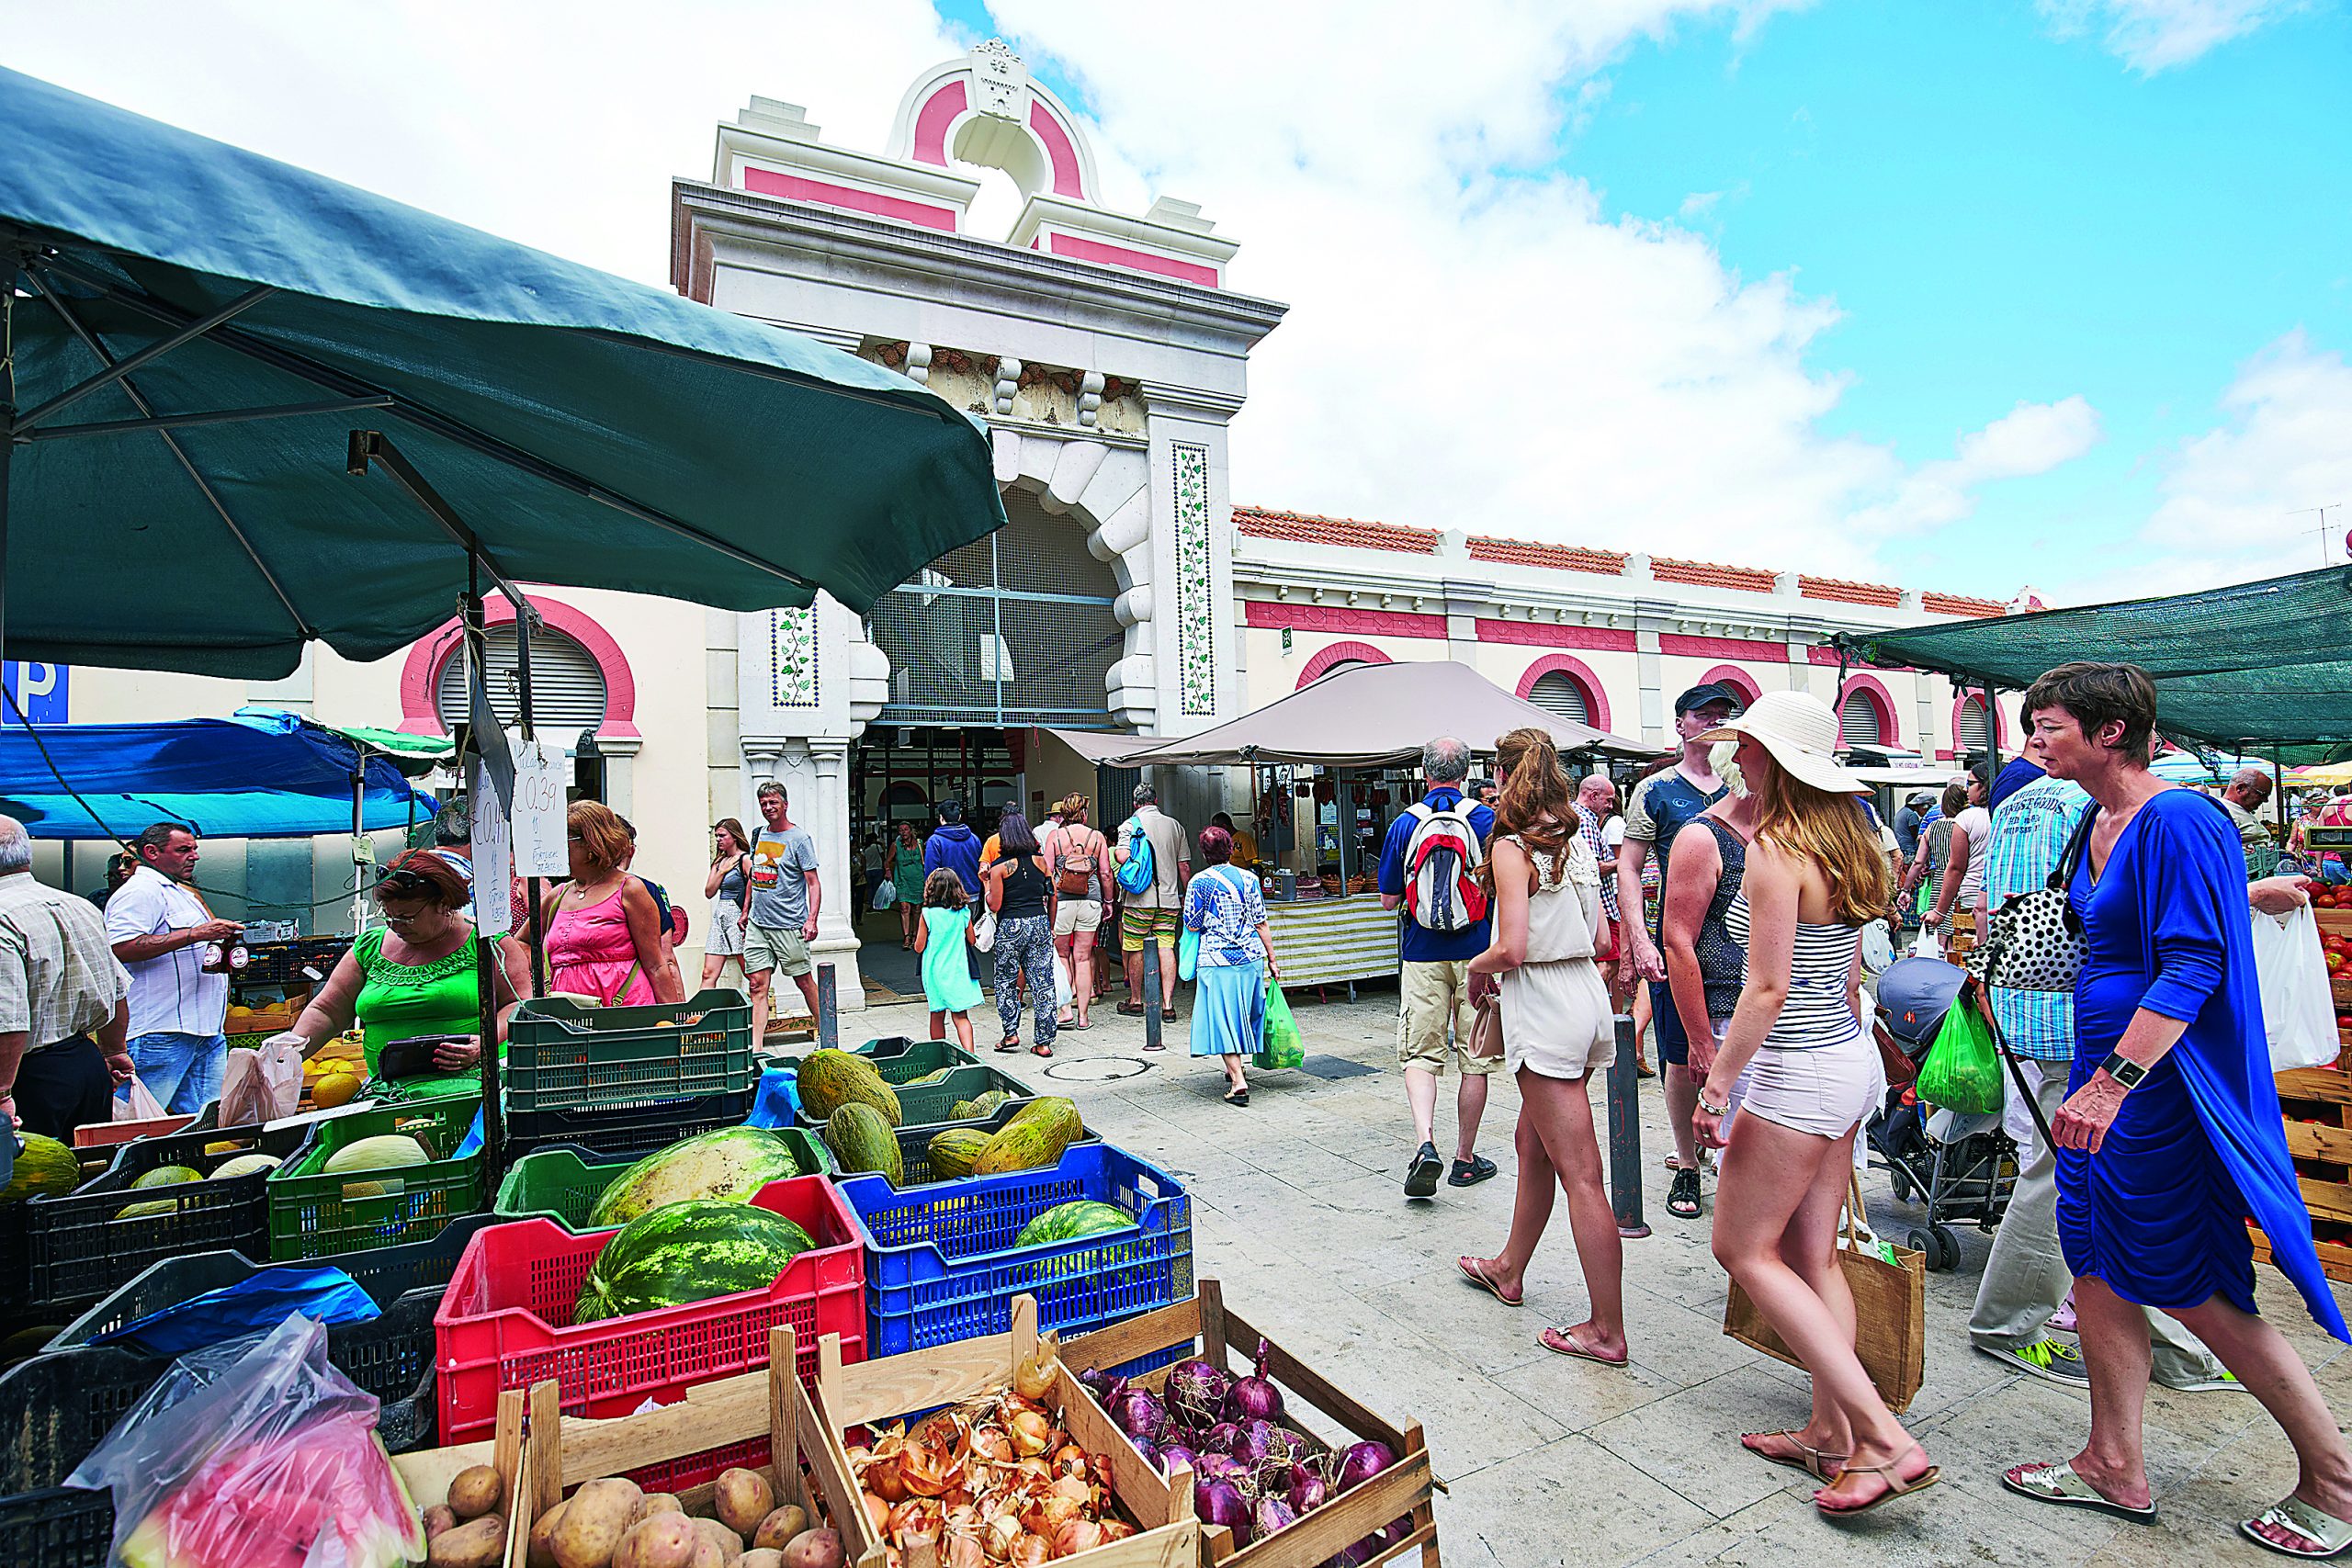 Mercados do Algarve: a vida em época alta